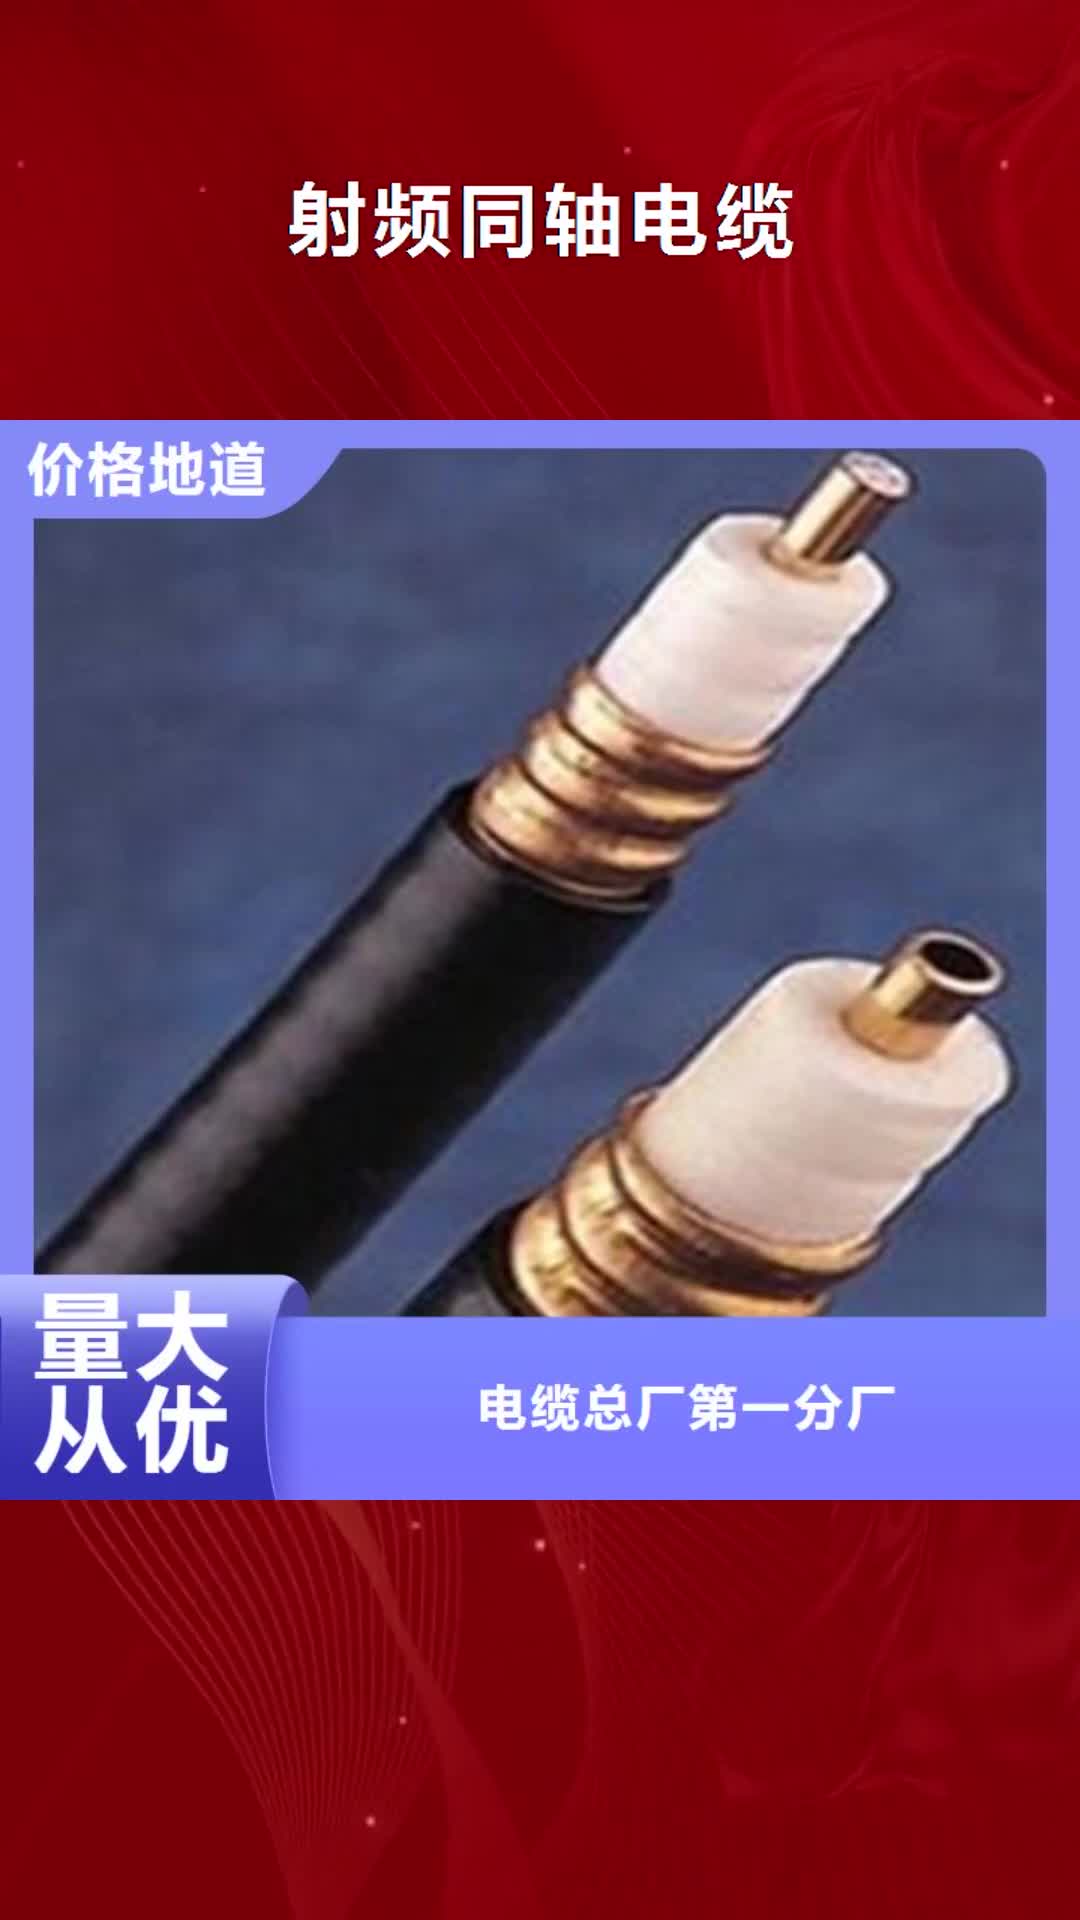 香港【射频同轴电缆】 信号电缆支持加工定制